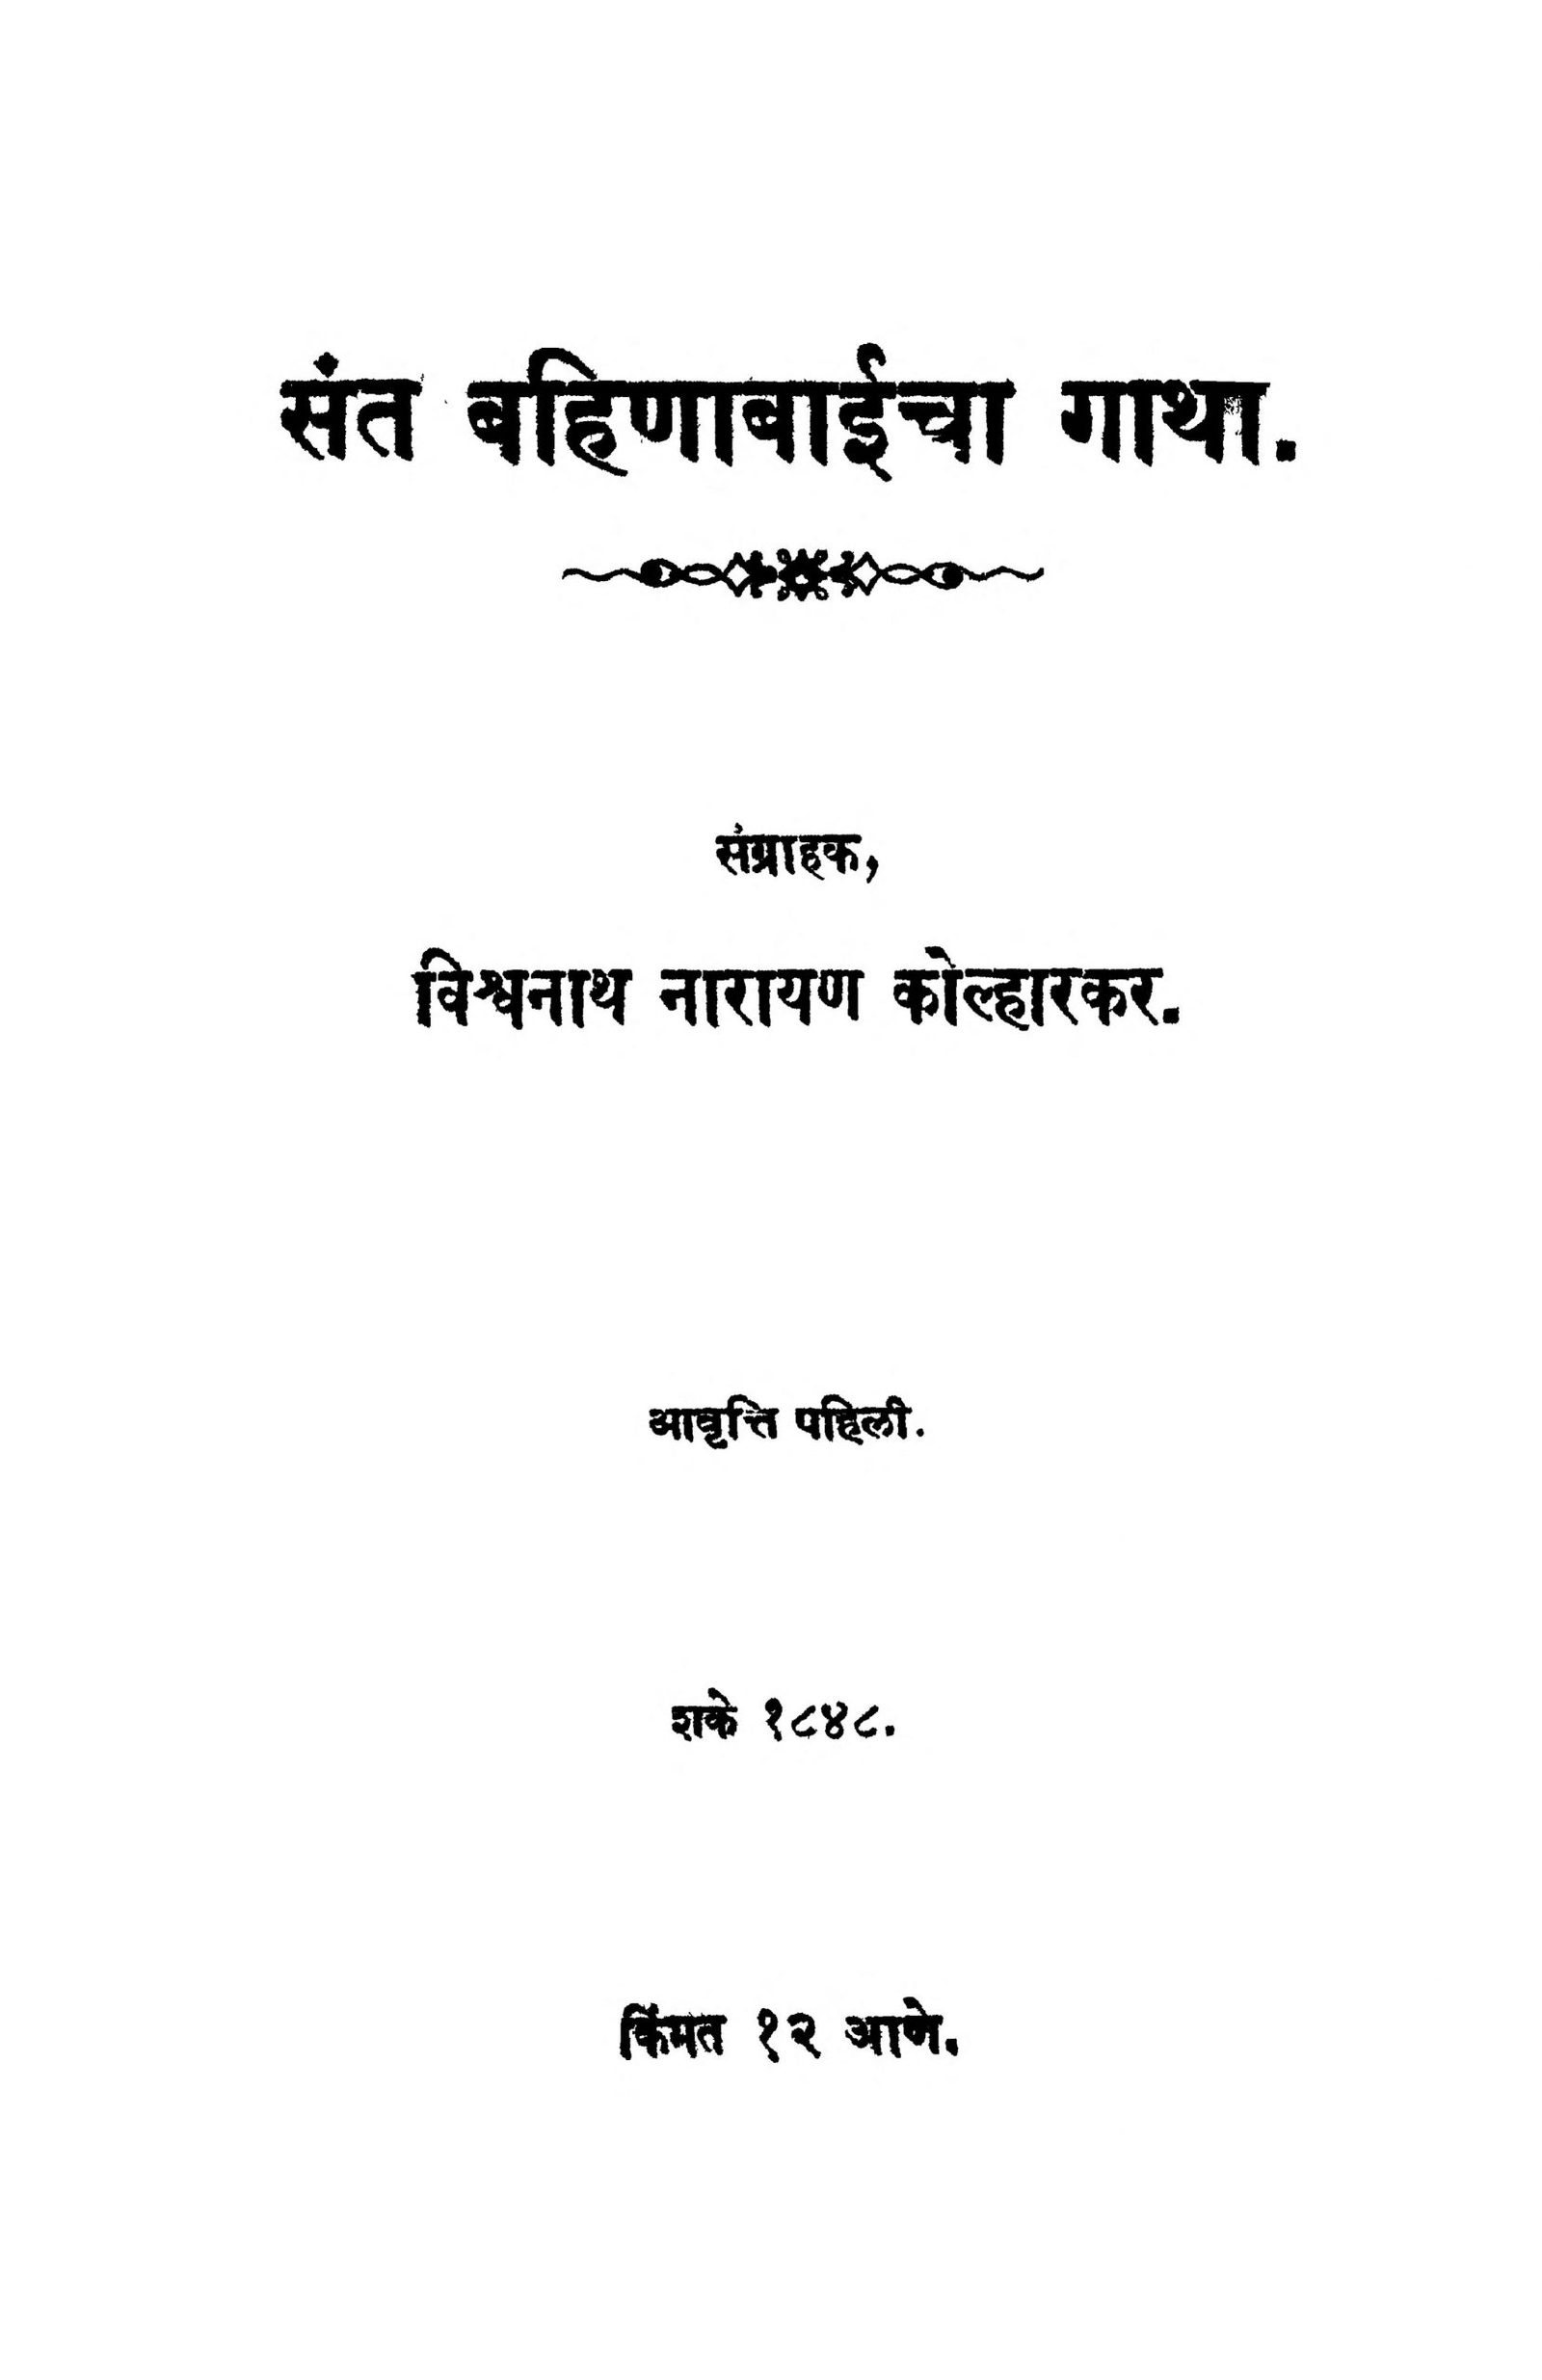 sant-bahinabaaiichaa-gaatha-by-vishvnath-narayan-scaled-2